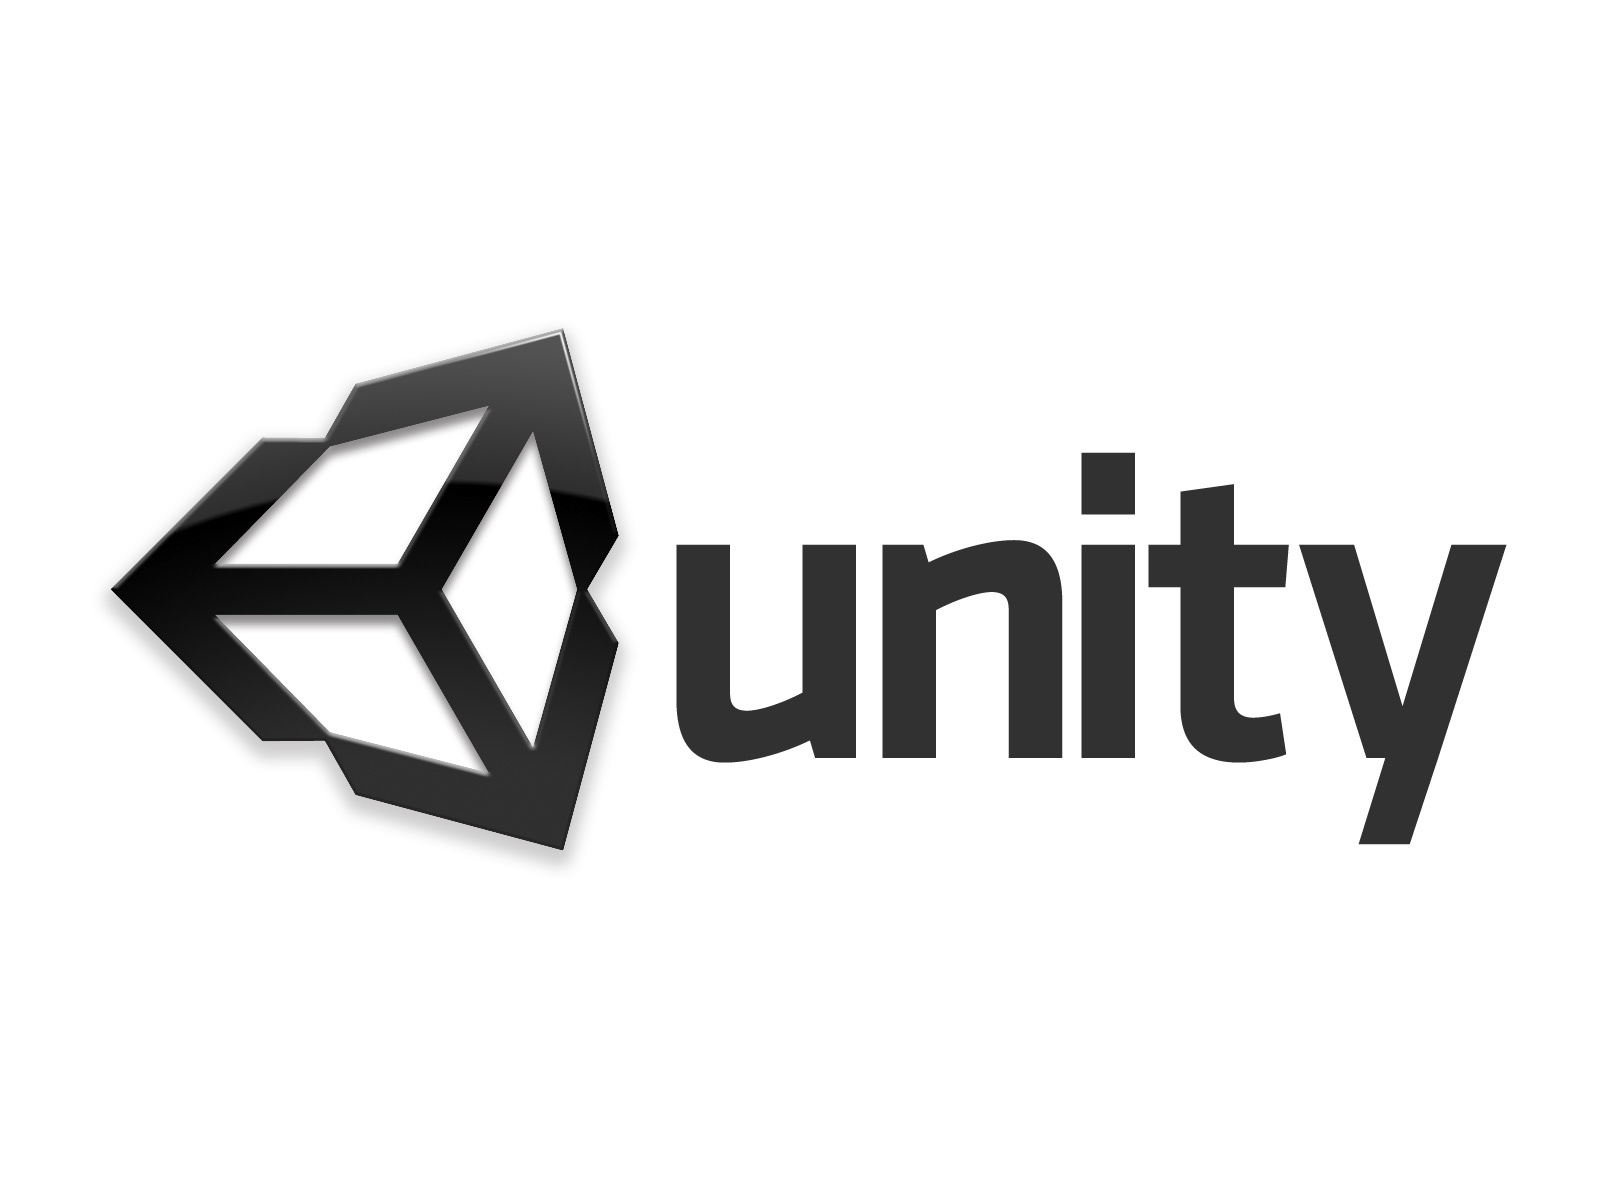 logo-unity-3D-5